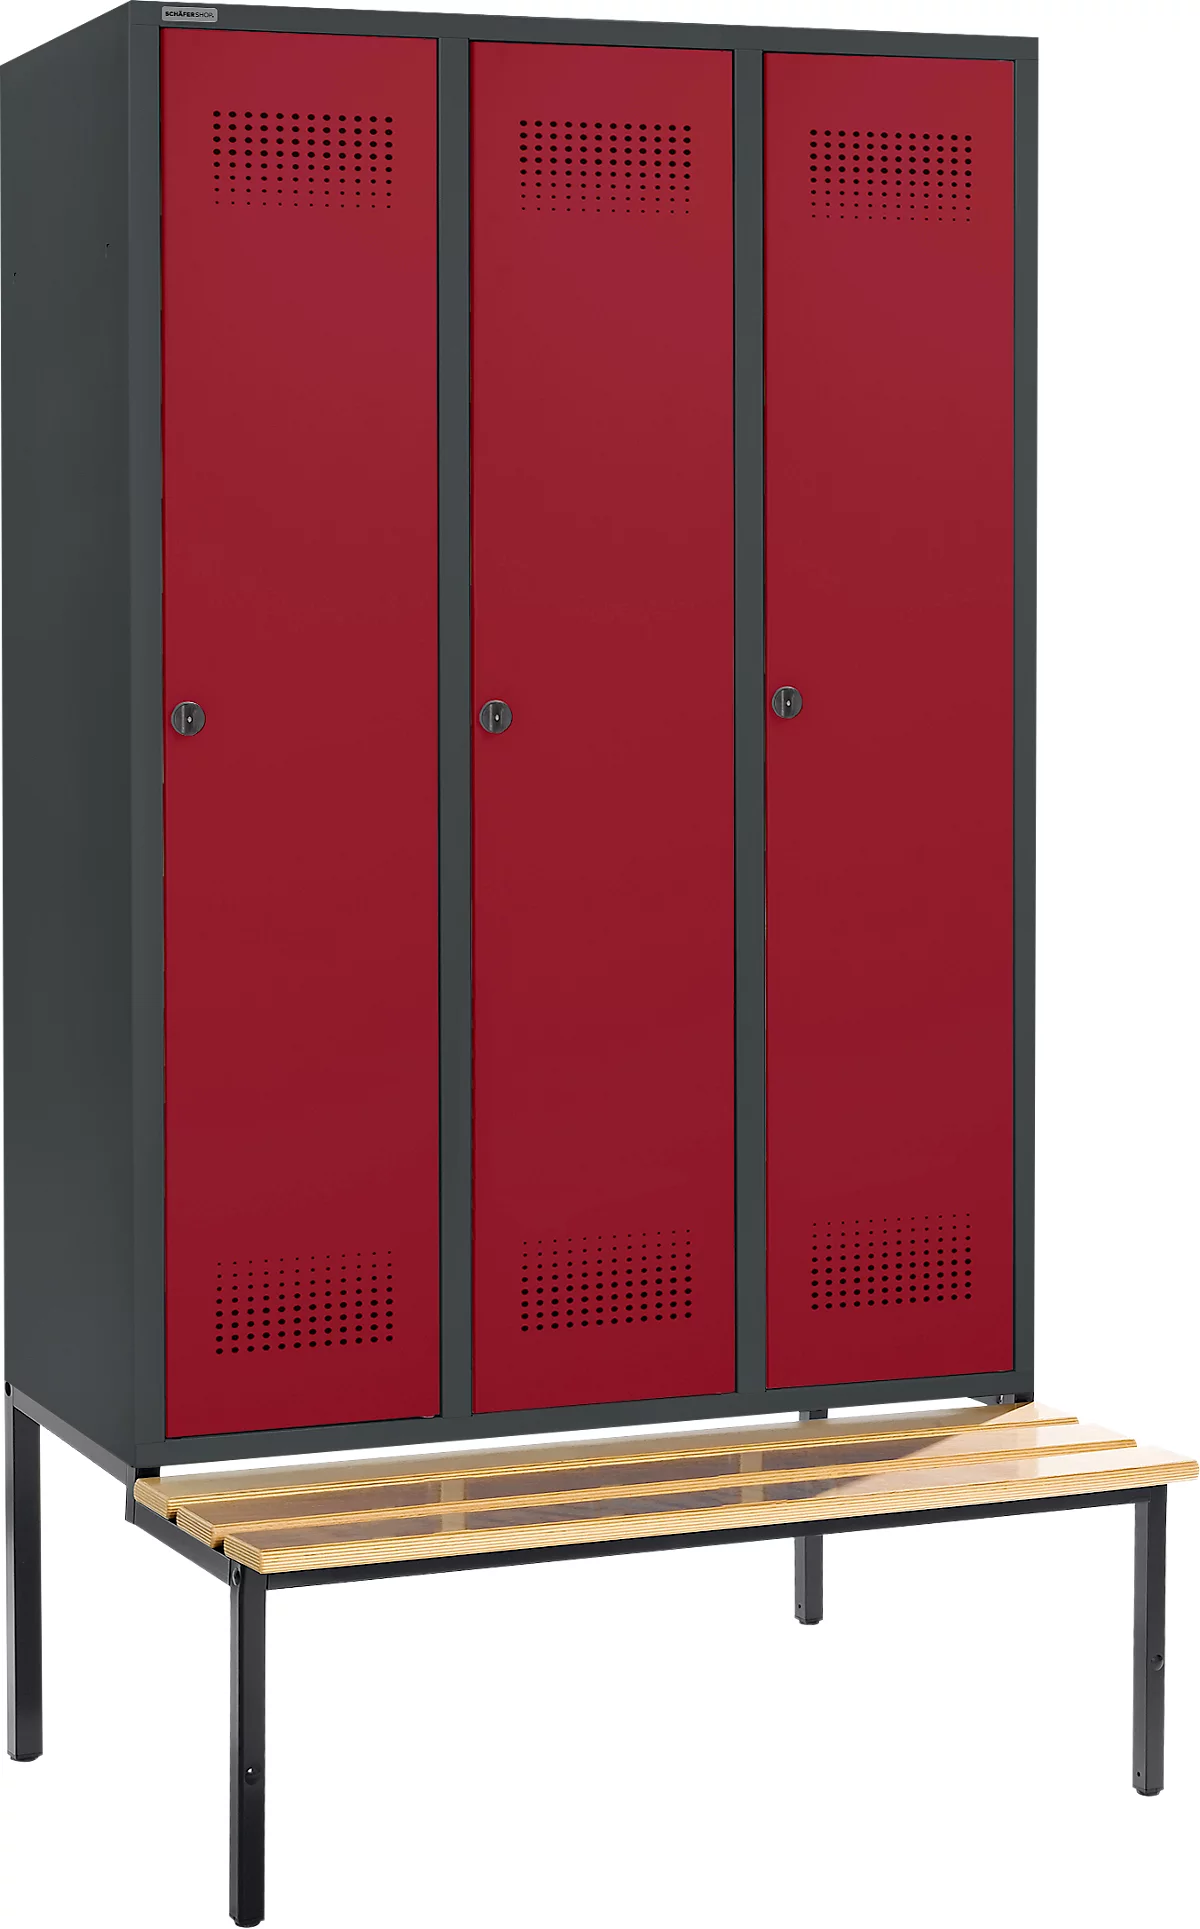 Schäfer Shop Genius Taquilla con banco, 3 compartimentos, anchura compartimento 400 mm, cierre de pasador giratorio de seguridad, antracita/rojo rubí